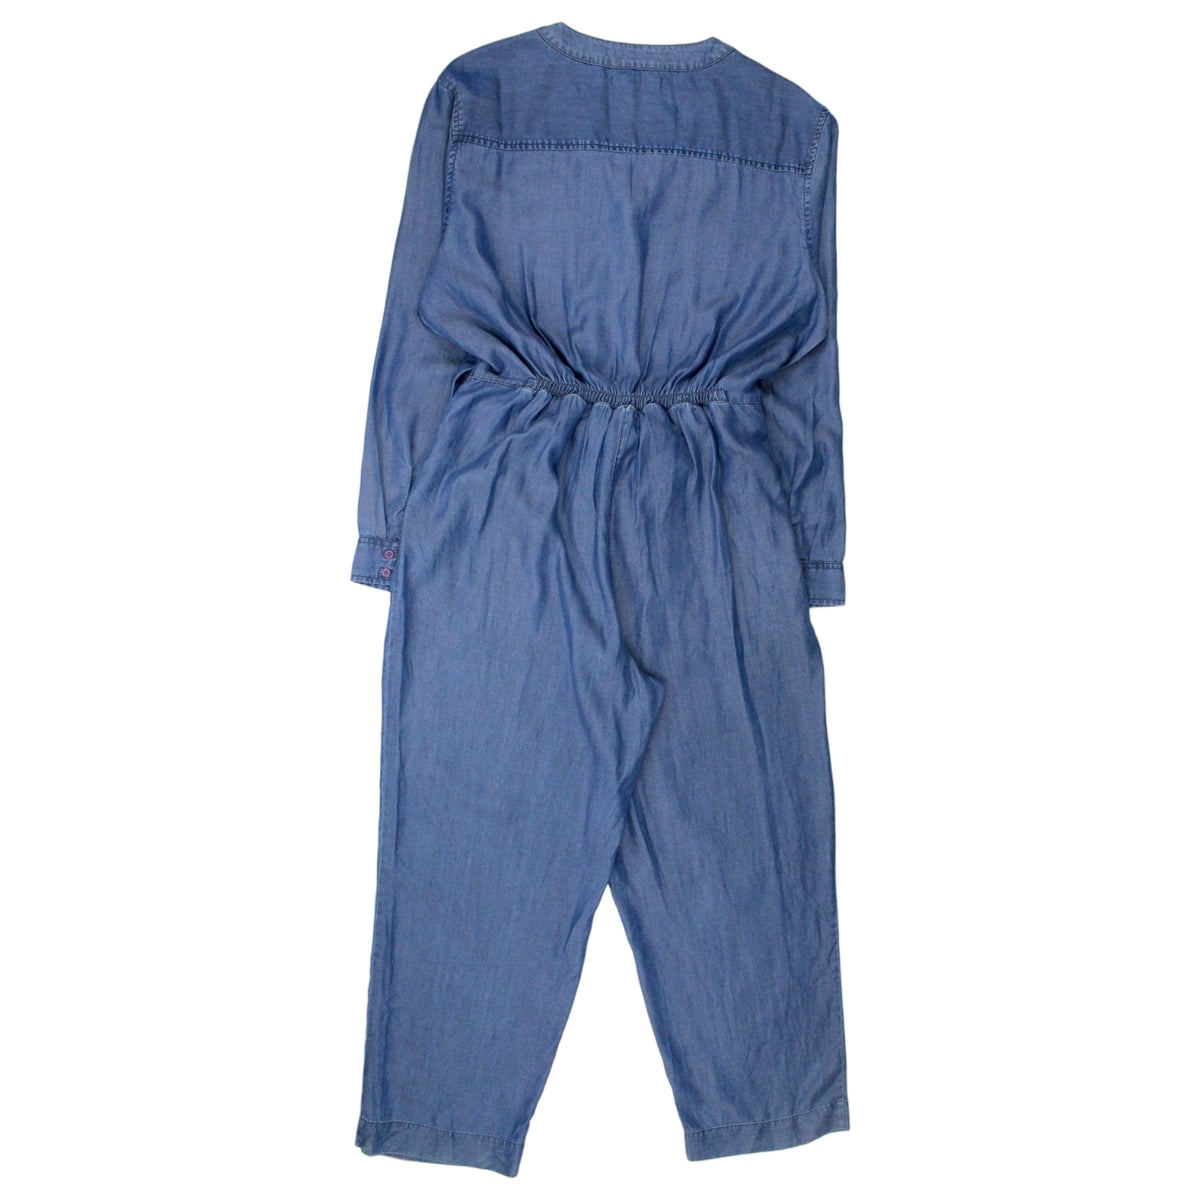 NRBY Blue Denim Look Jumpsuit - Sample